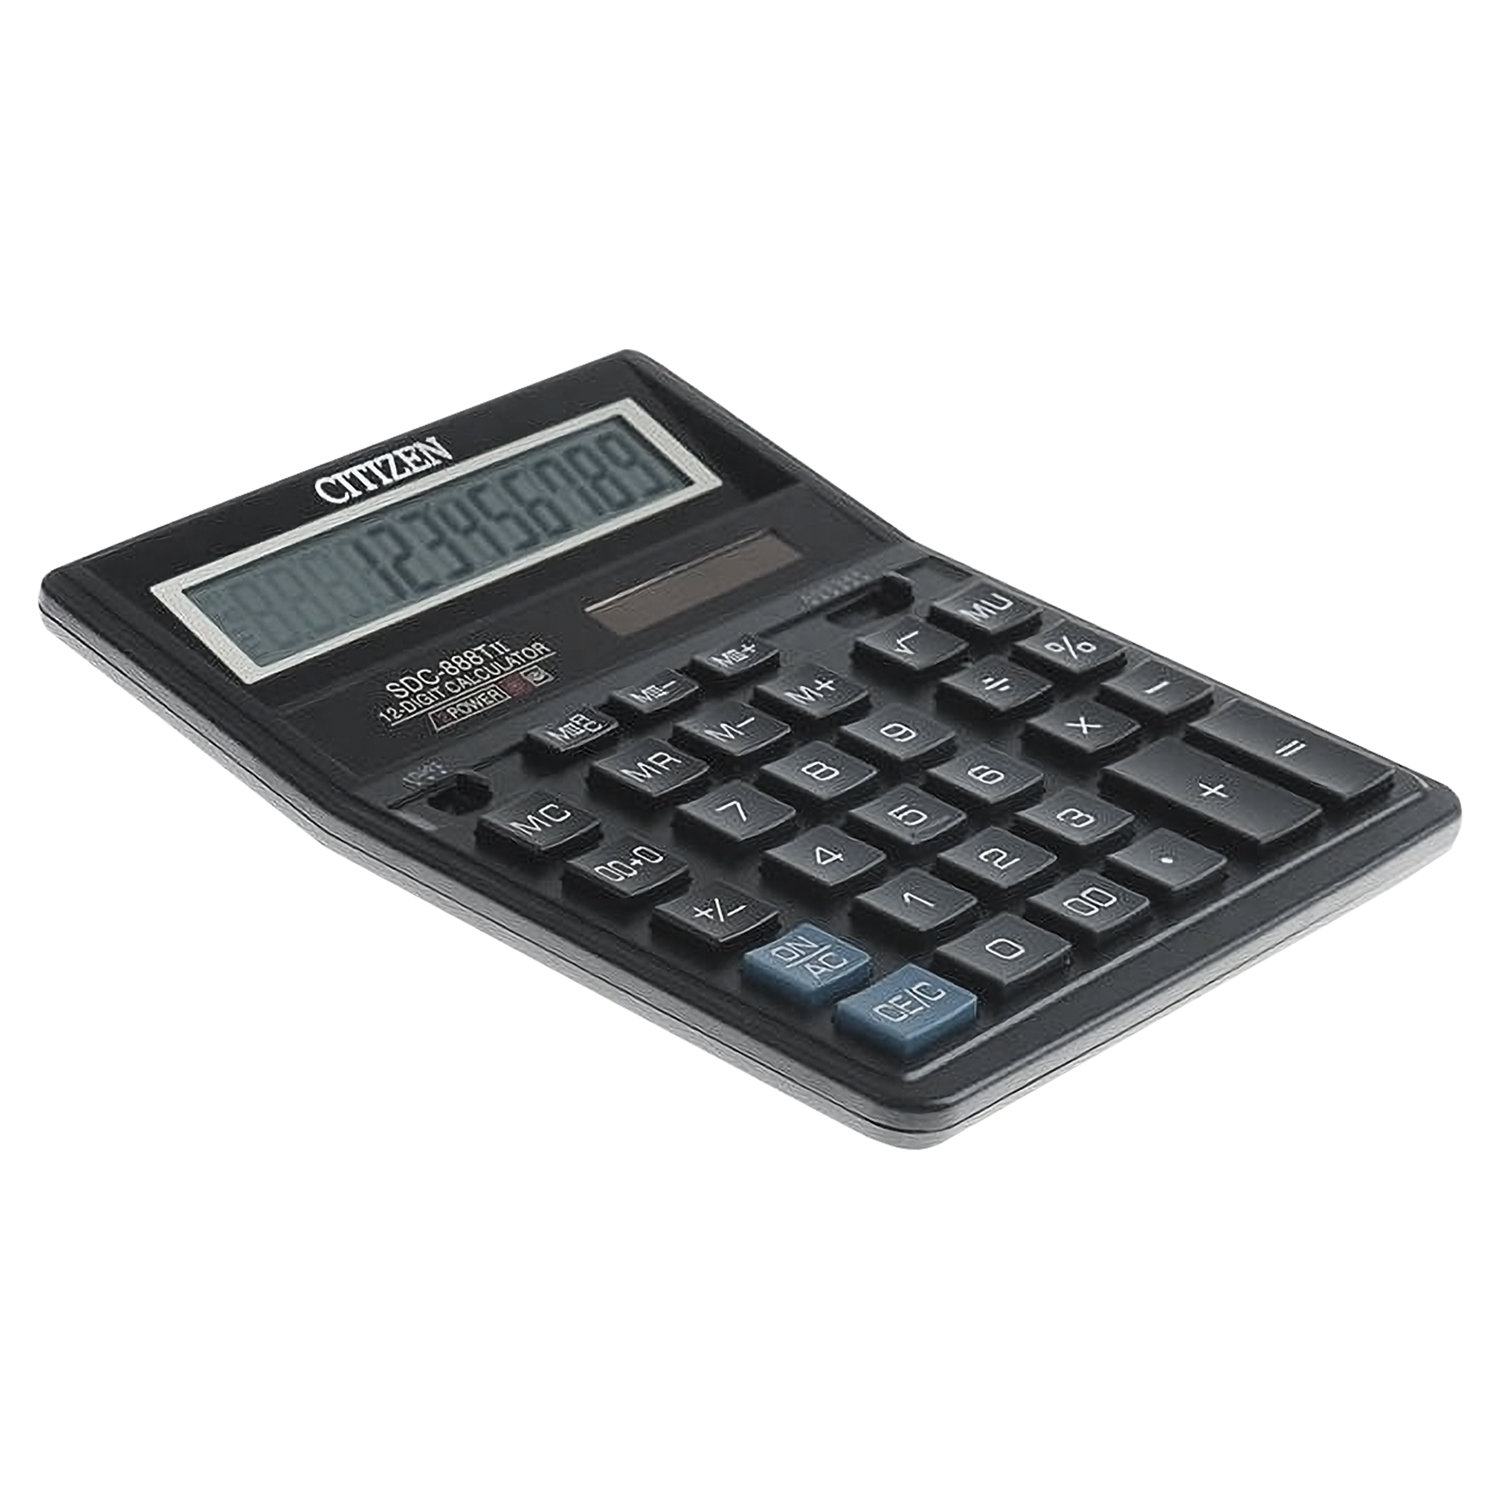 Калькулятор CITIZEN настольный SDC-888T, 12 разрядов, двойное питание, 205х159мм